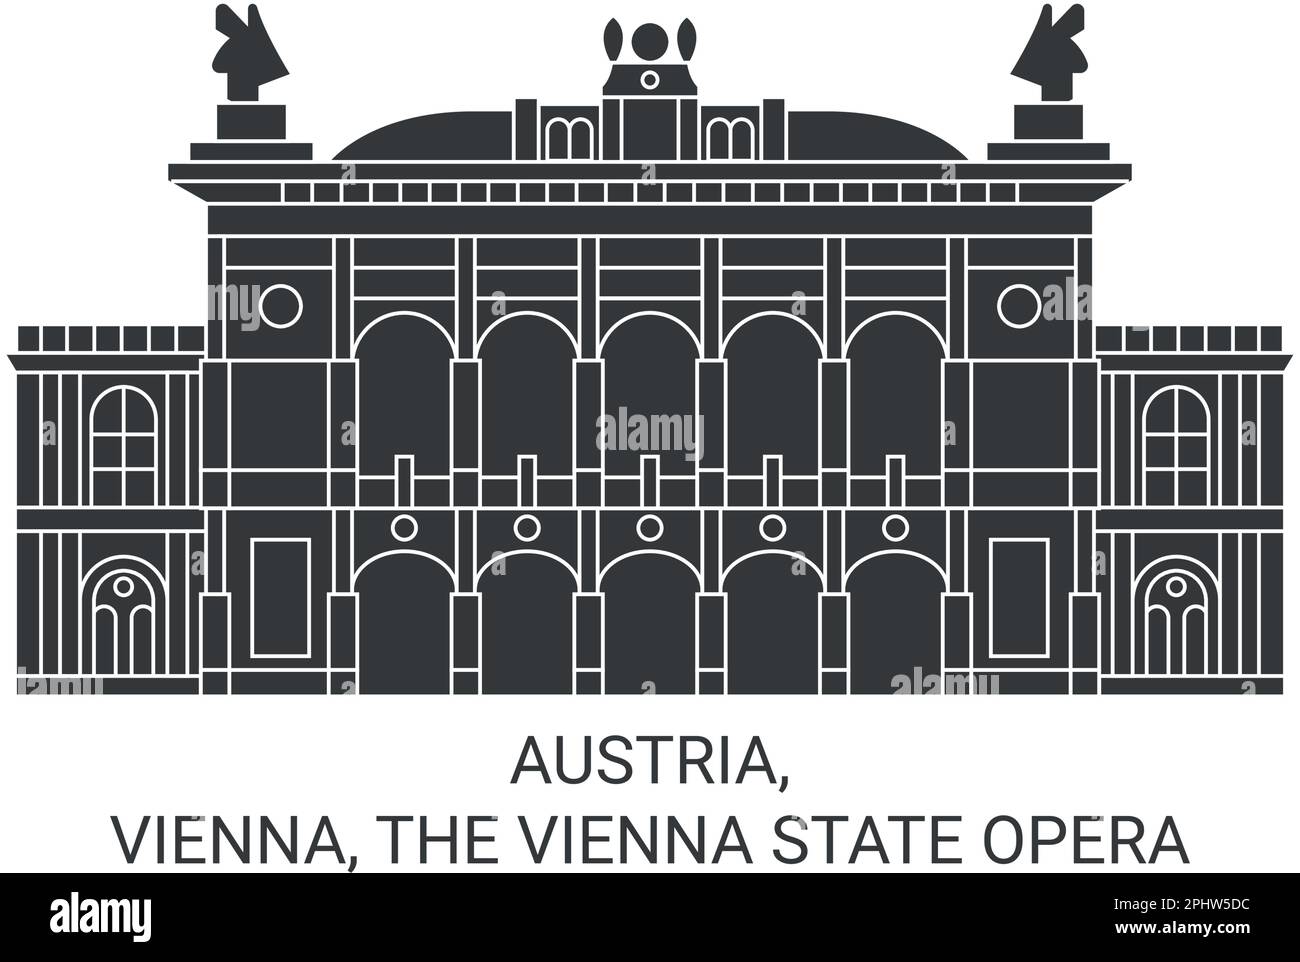 Österreich, Wien, die Wiener Staatsoper reisen Wahrzeichen Vektordarstellung Stock Vektor